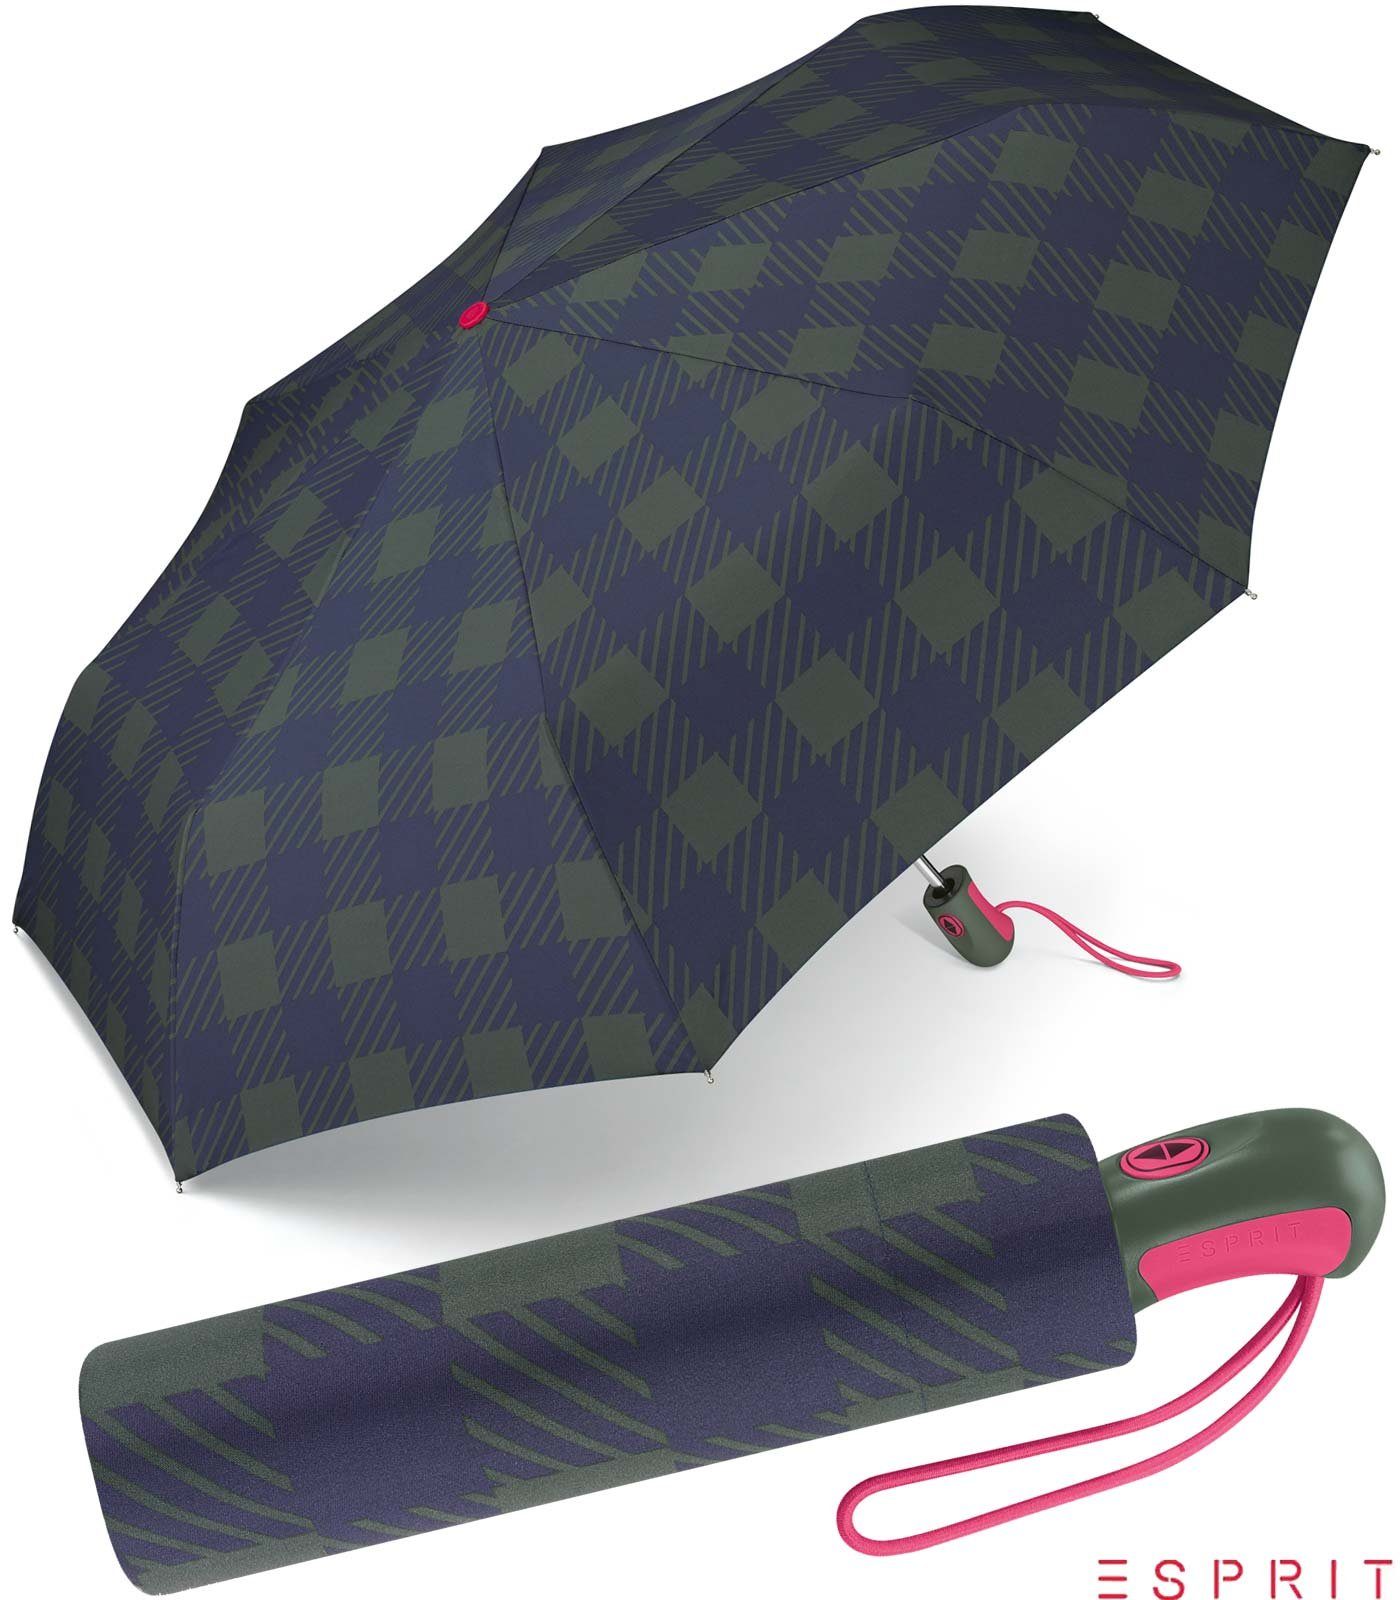 Esprit Taschenregenschirm schöner Schirm für Damen mit Auf-Zu Automatik, klassisches Design in modischen Farben grün